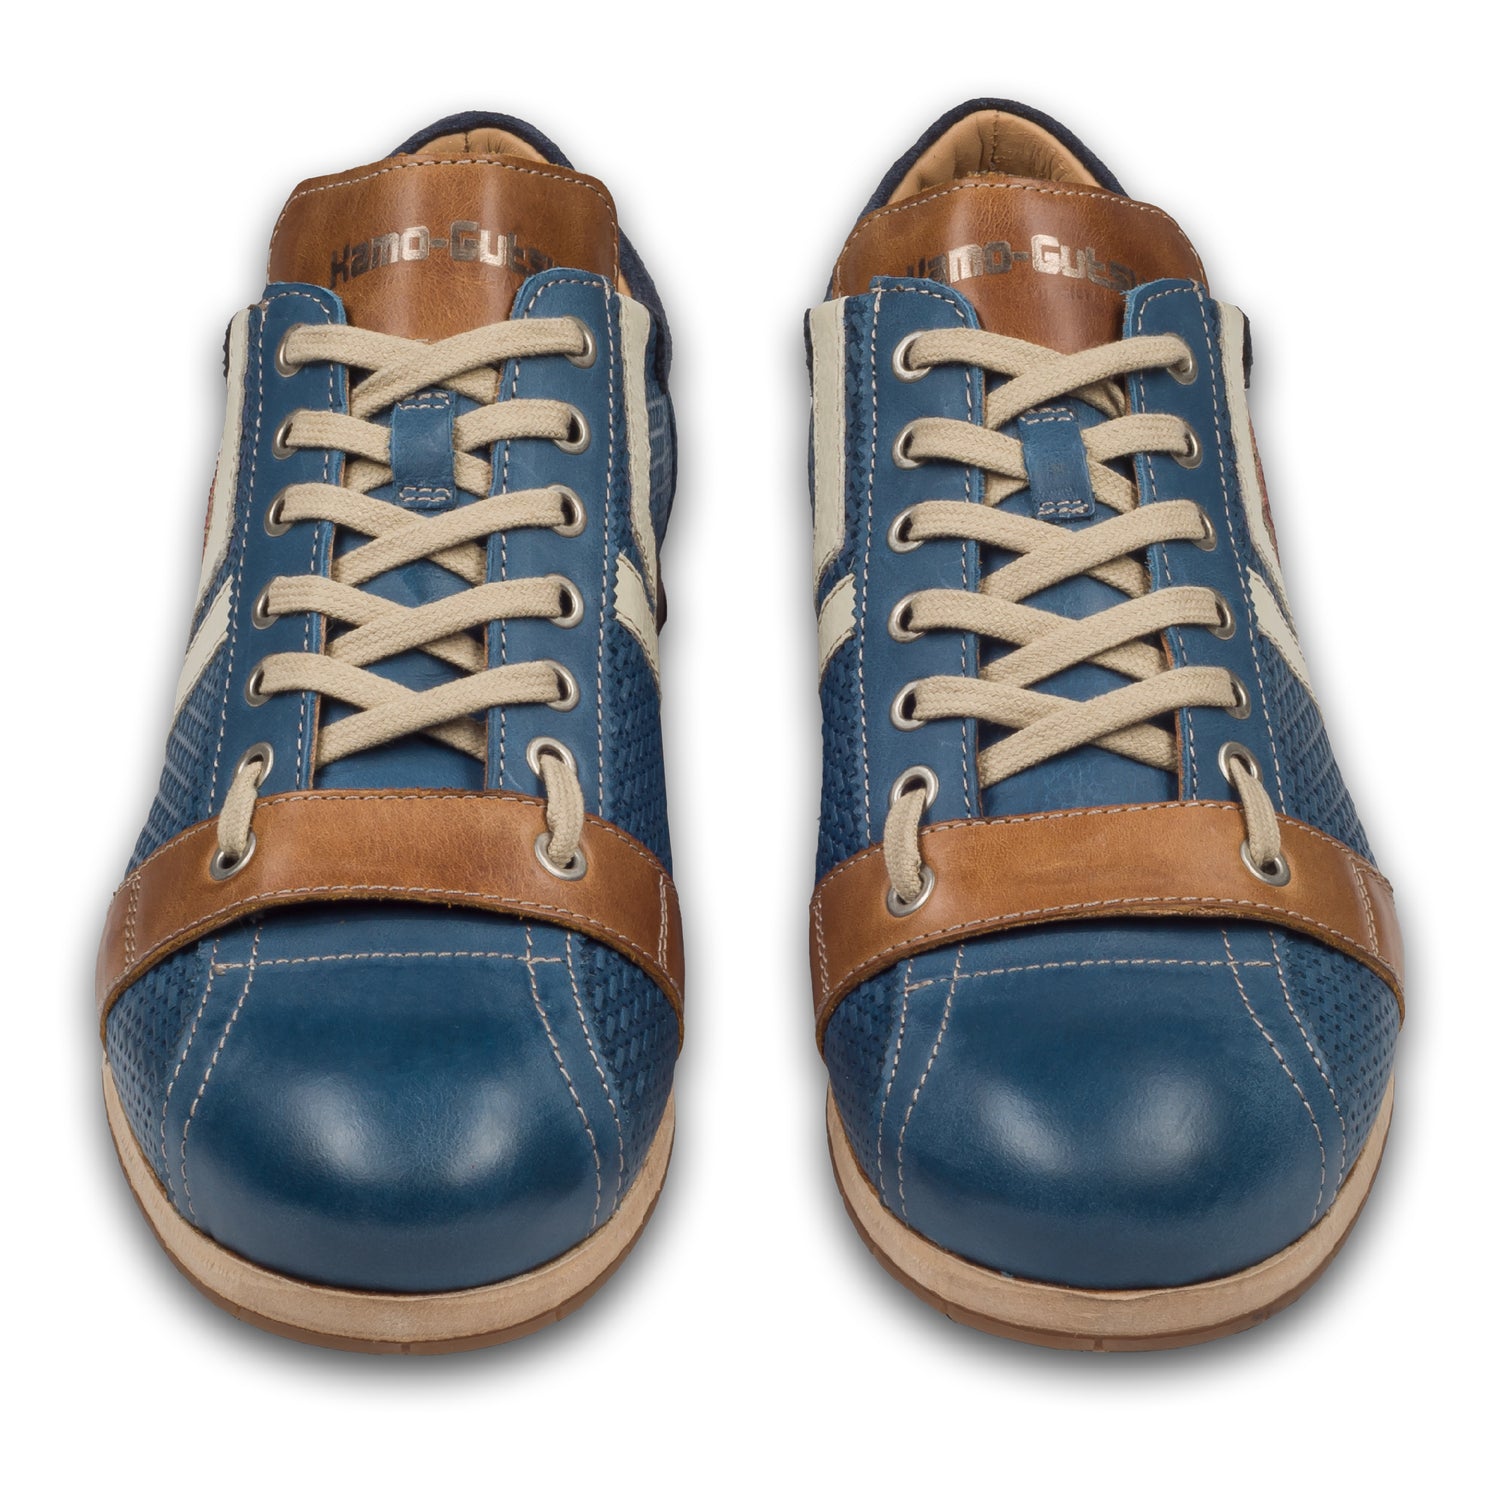 KAMO-GUTSU Herren Sneaker, blau mit braun und creme-weiß, (TIFO-030 royal). Paarweise Ansicht von vorne. Bei Sisento.